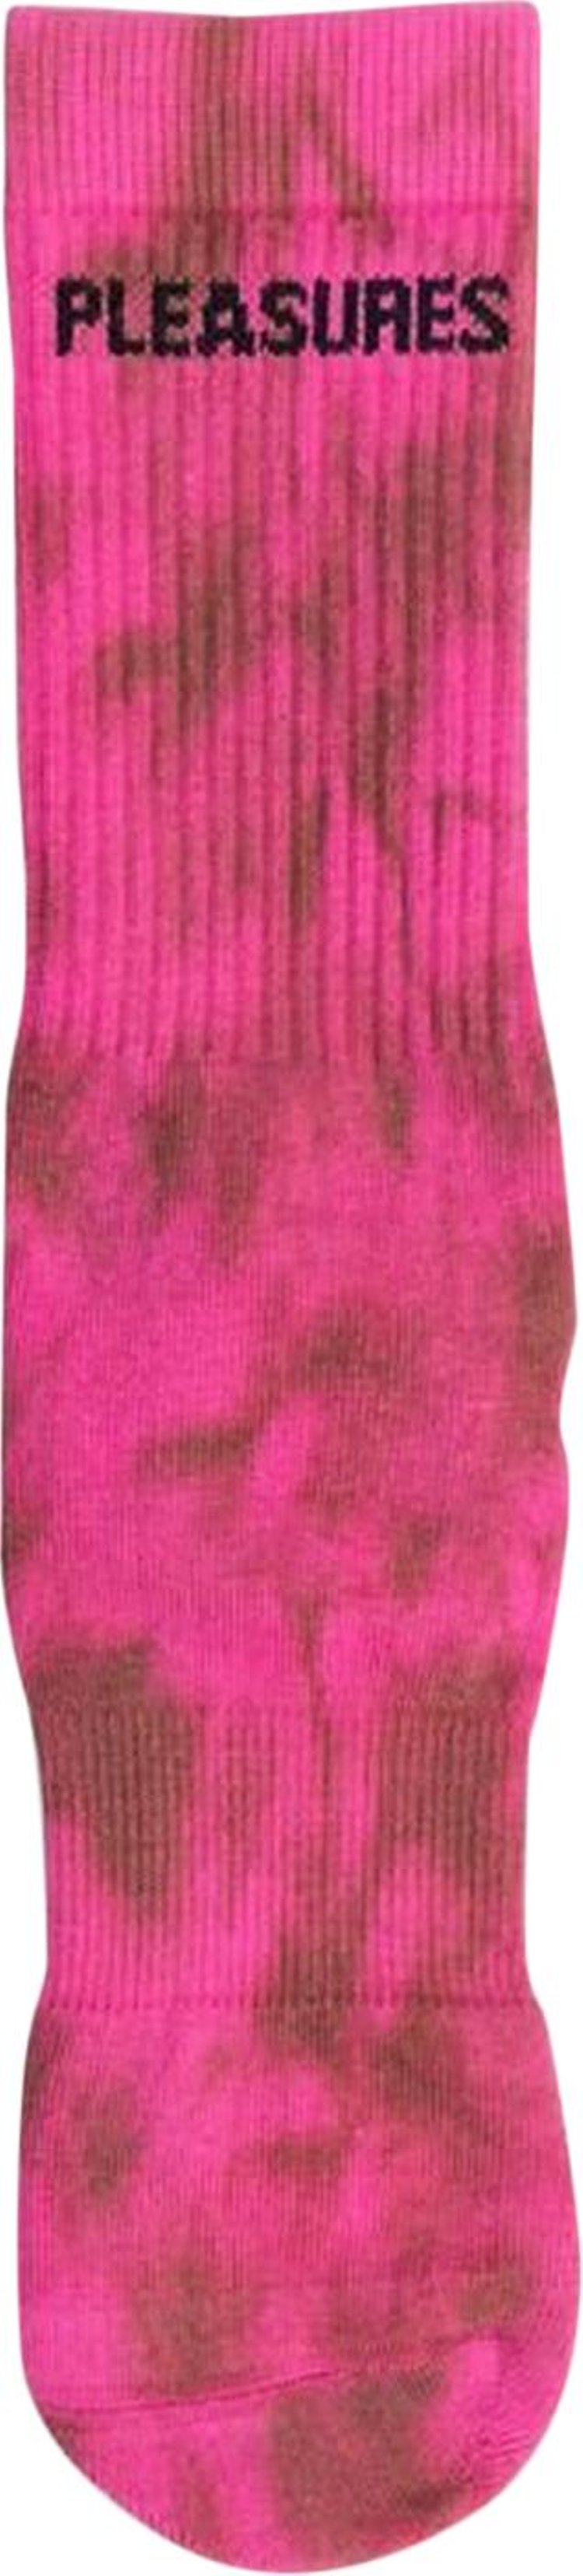 Pleasures Indie Dye Socks 'Pink'